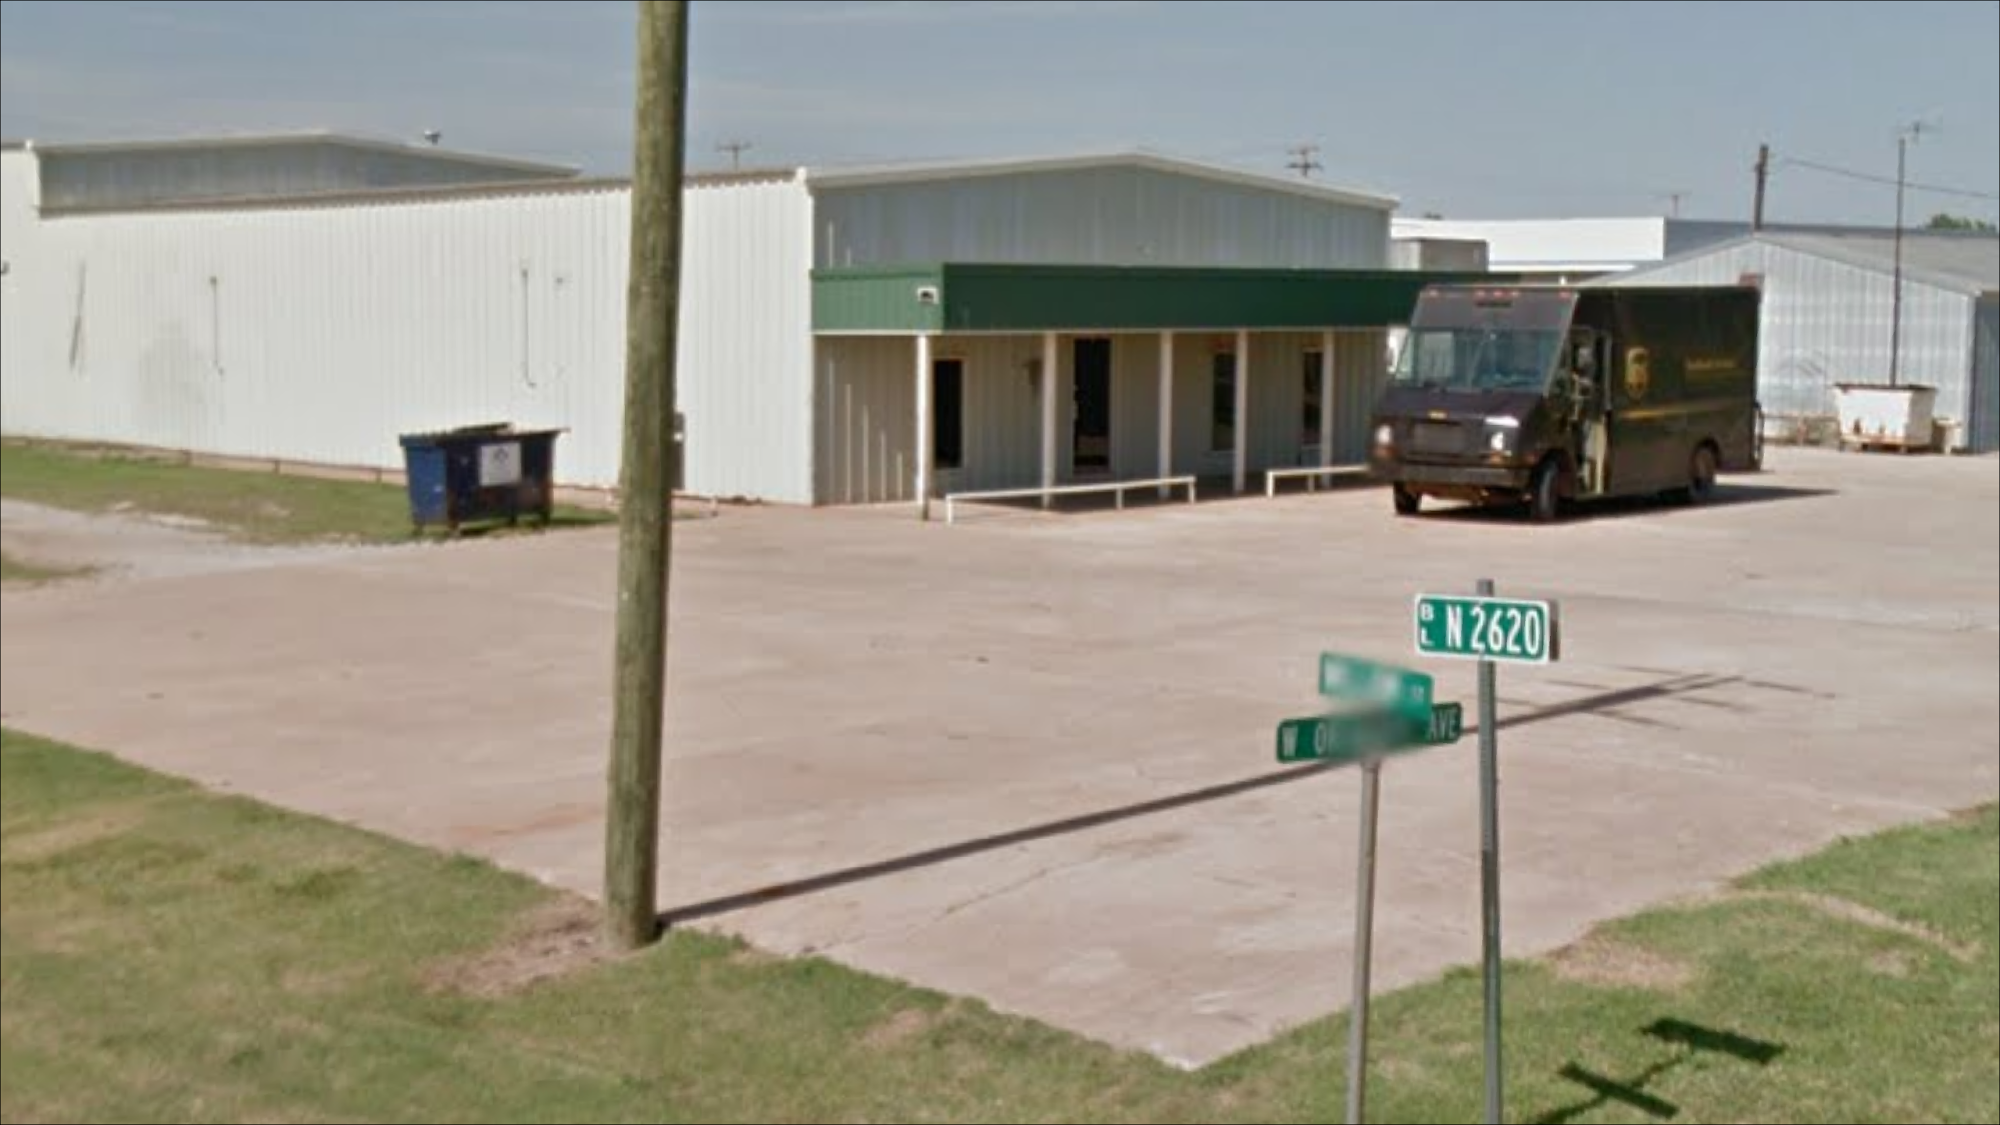 Okeene Veterinary Clinic 1509 W Oklahoma Ave, Okeene Oklahoma 73763